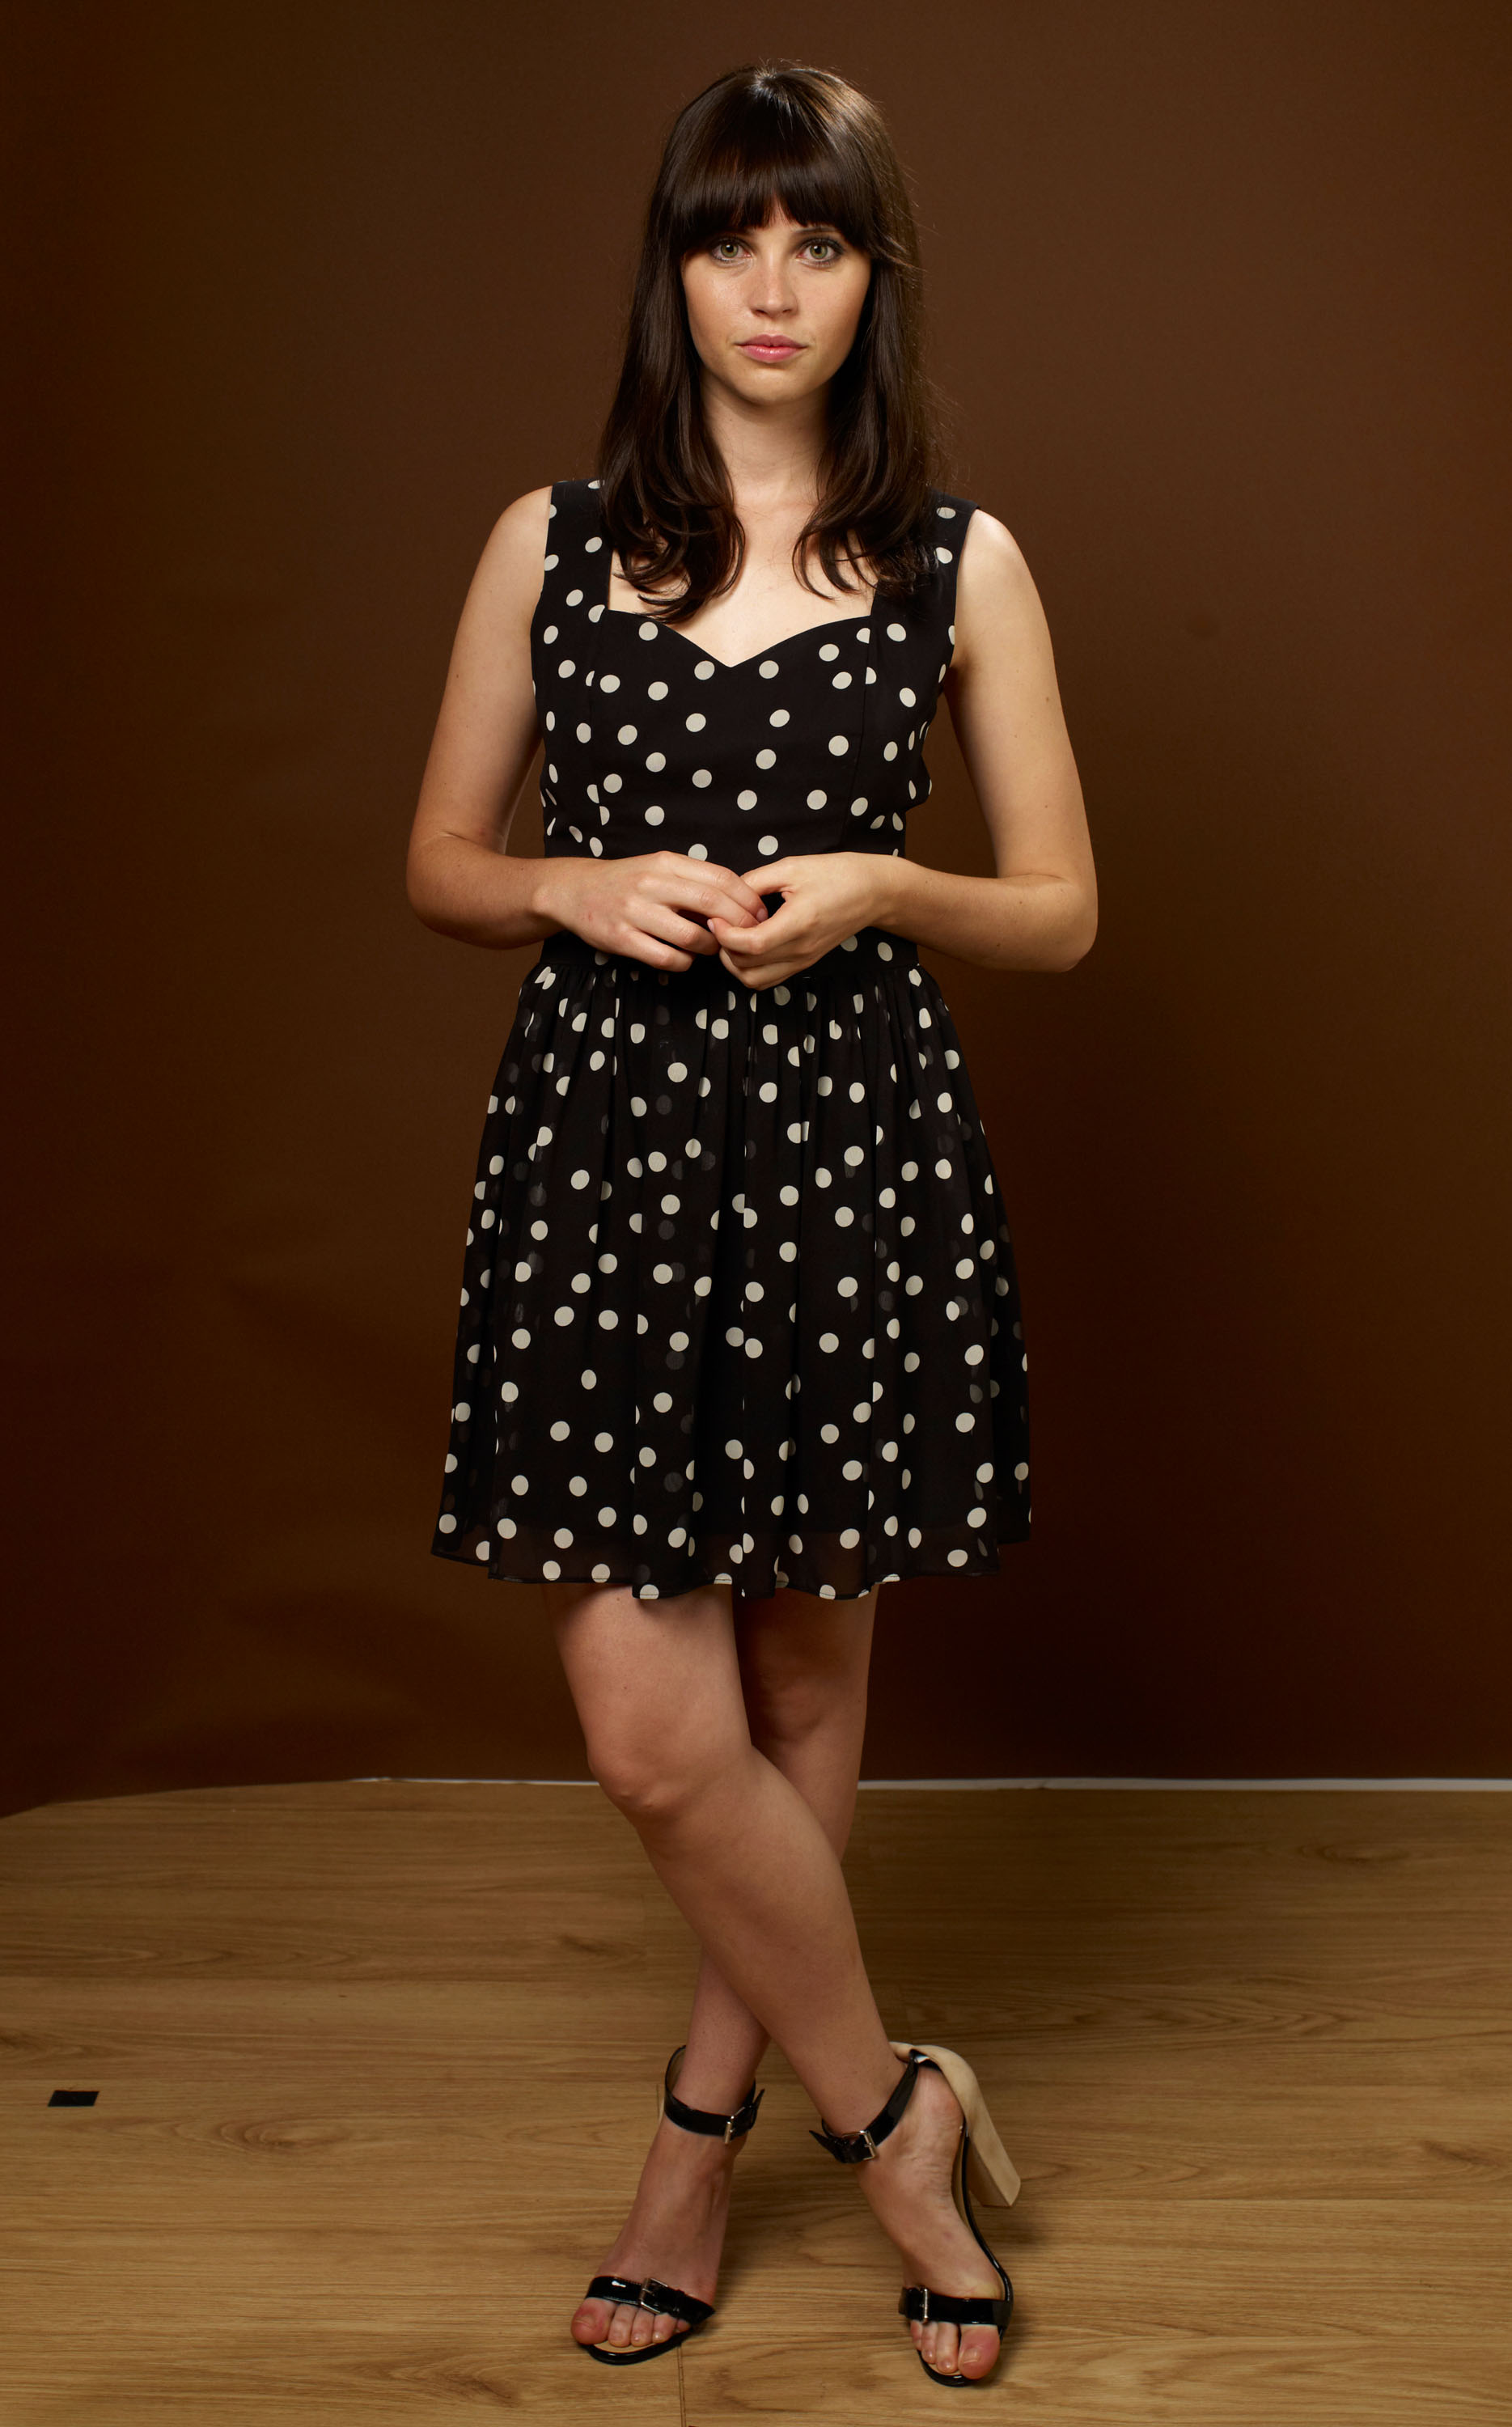 Digitalminx.com - Actresses - Felicity Jones - Page 1.